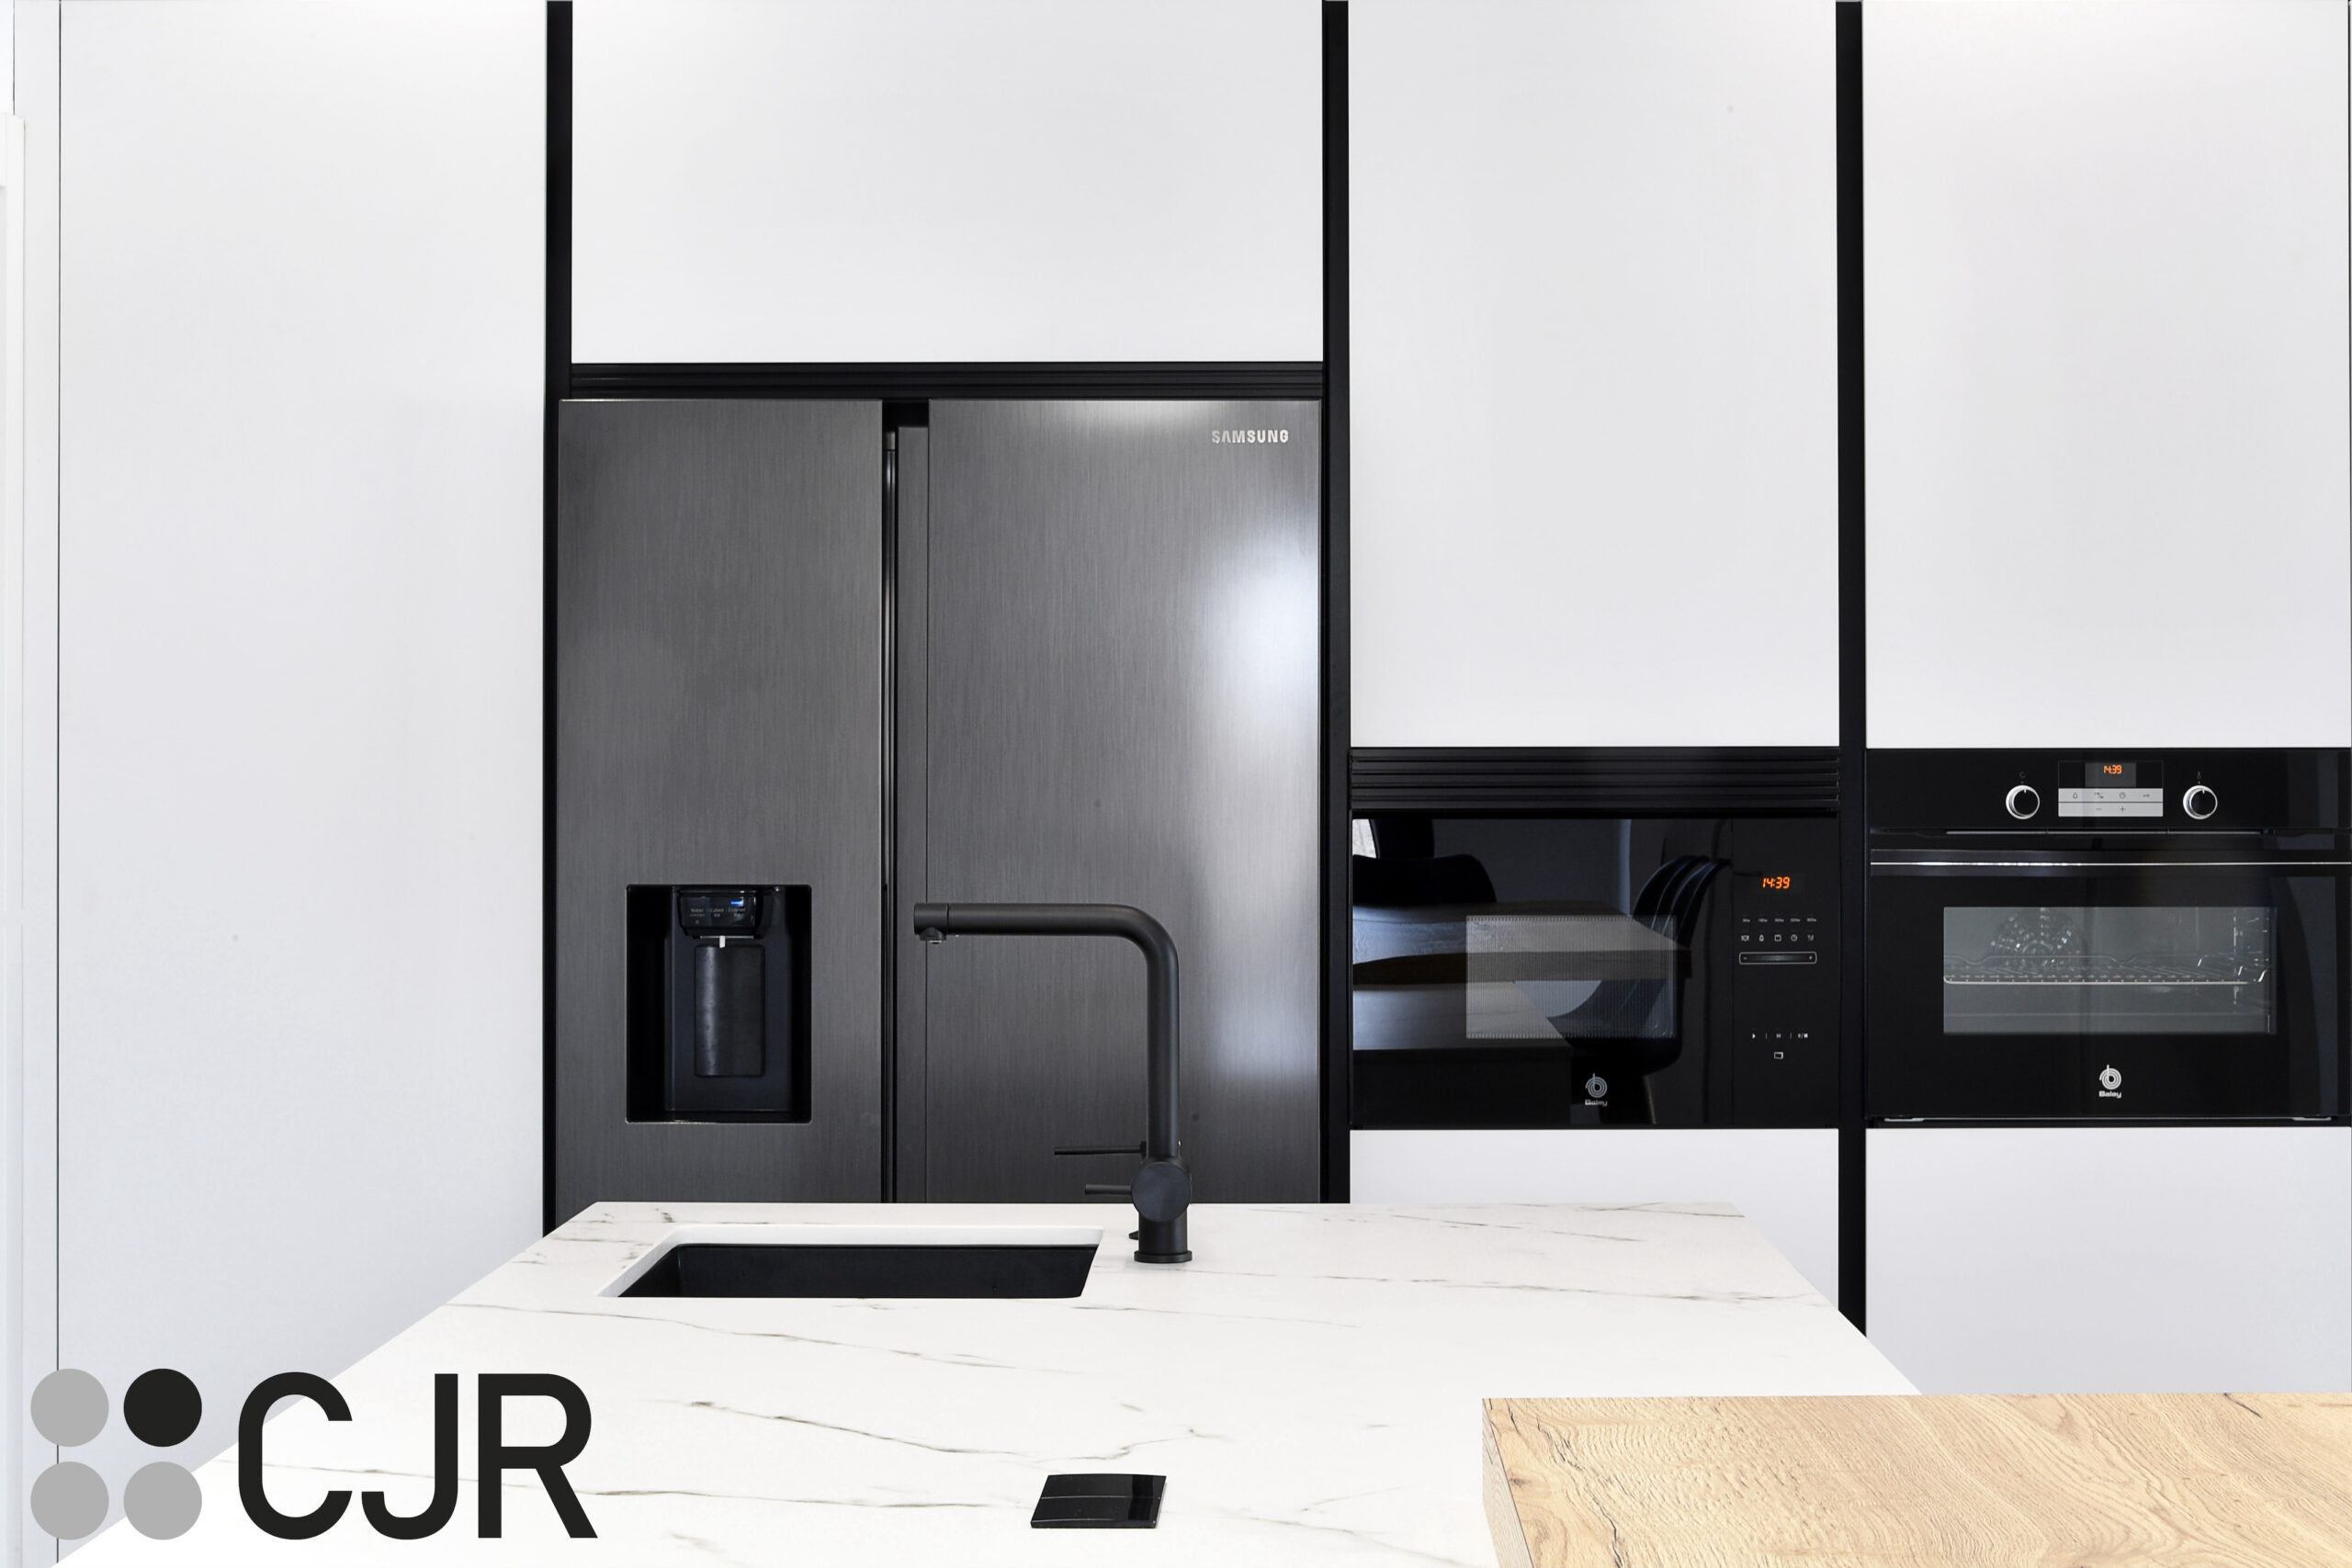 torres de cocina con frigorifico samsun y horno y microondas balay en cristal negro cjr